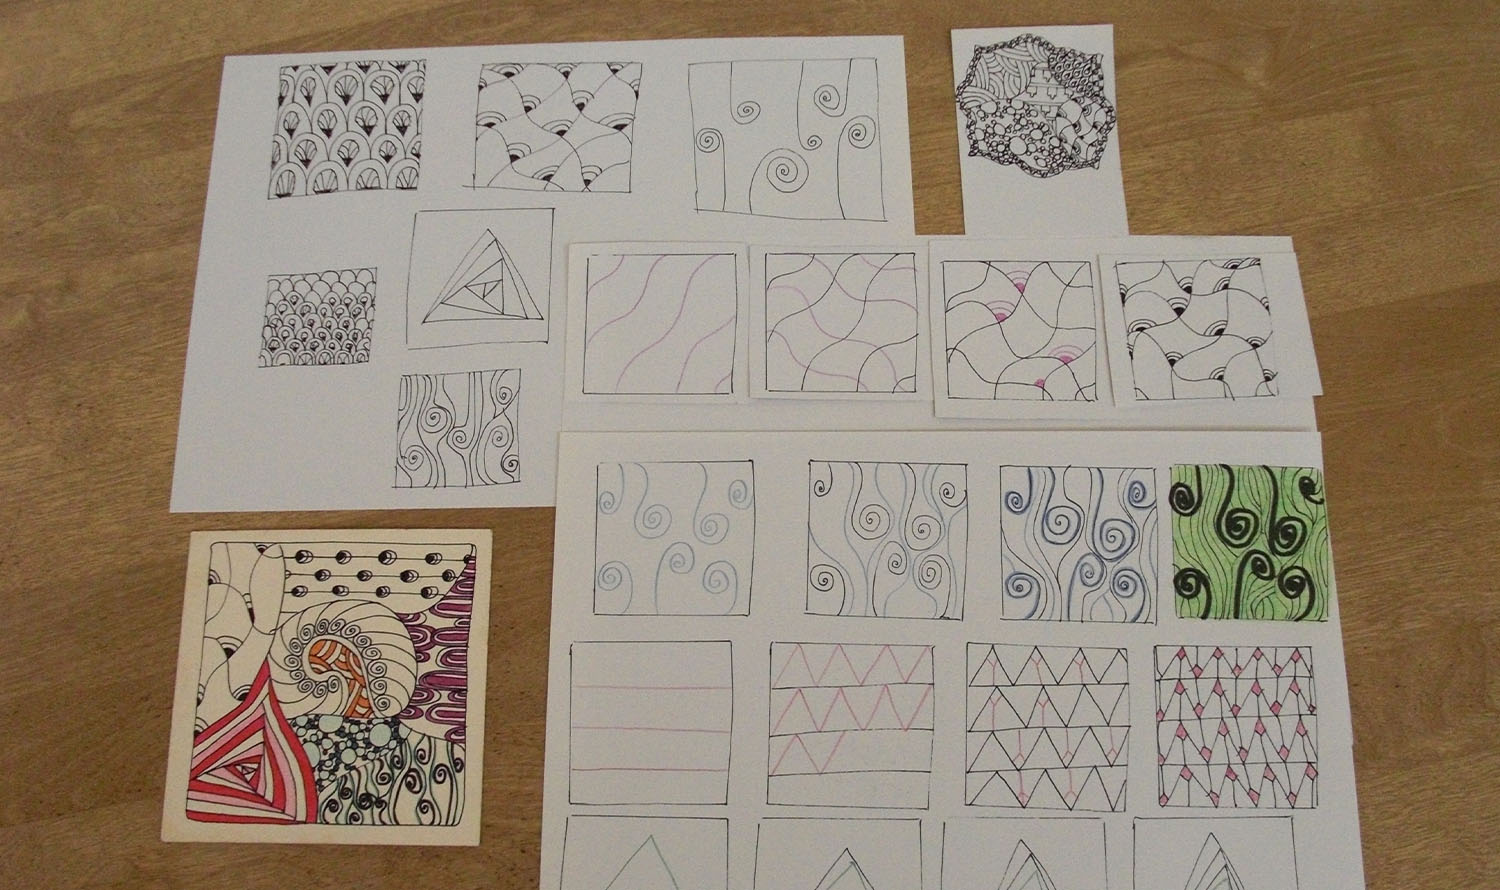 Na stole znajdują się różne kreatywne wzory (Zendoodles).